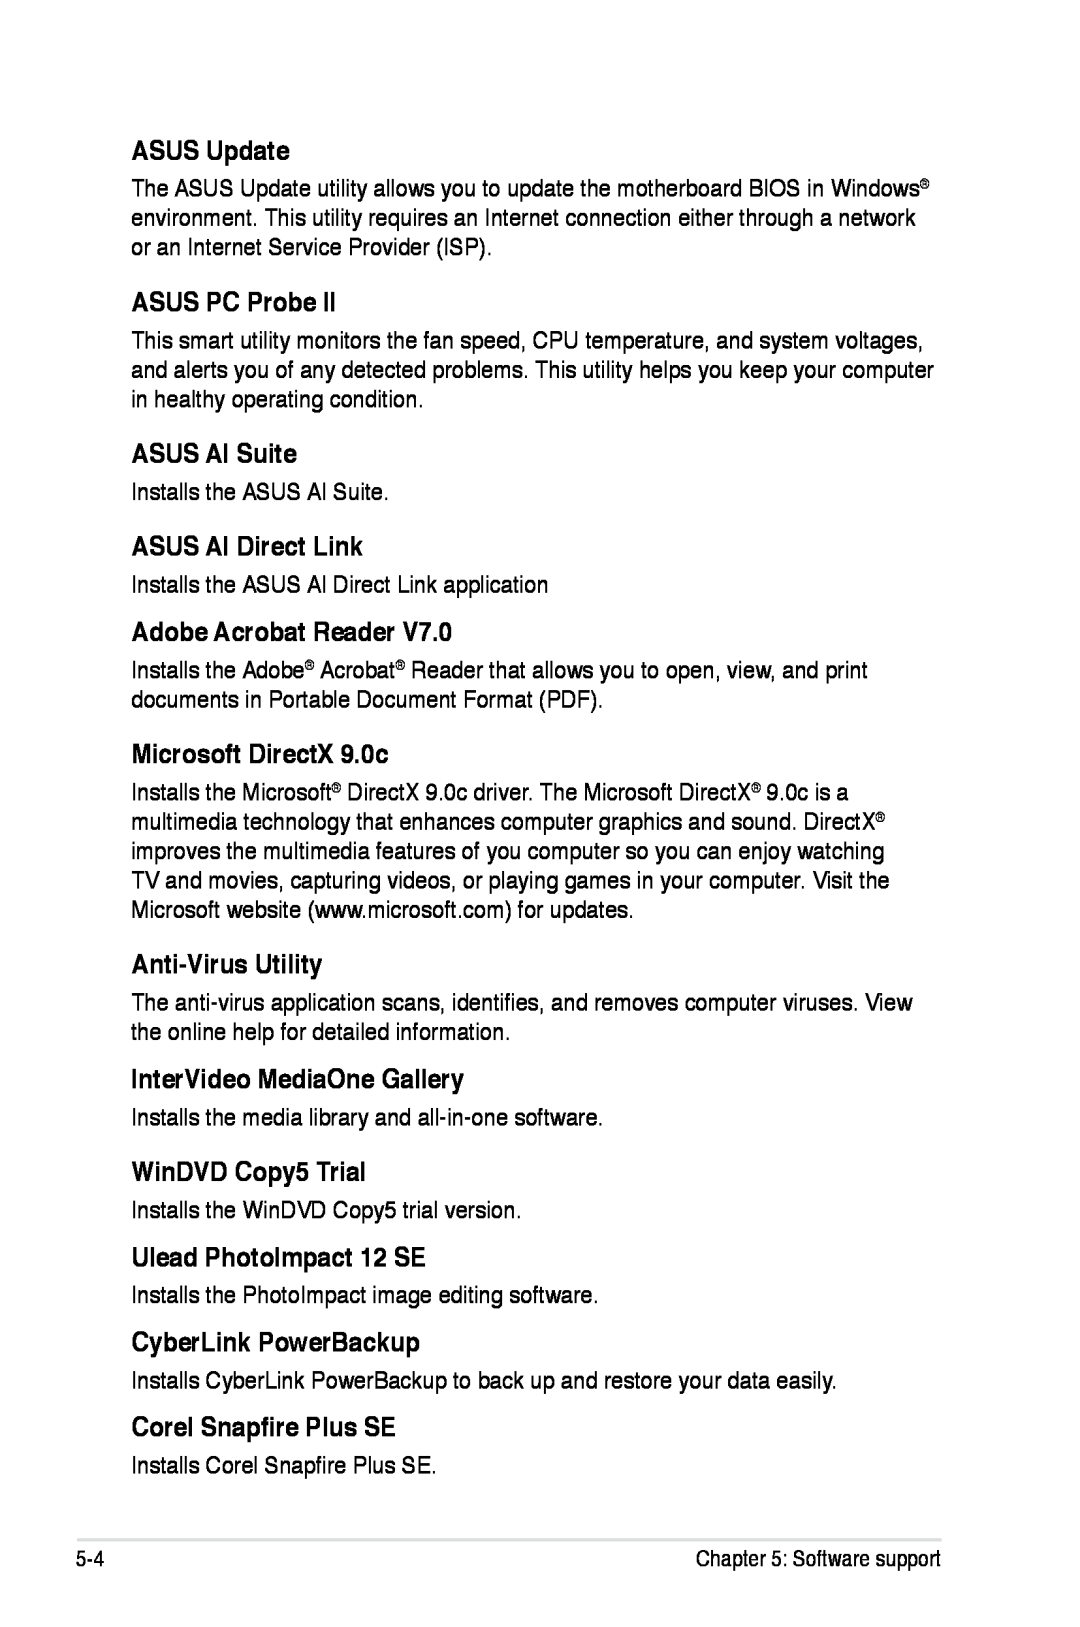 Asus P5K/EPU ASUS Update, ASUS PC Probe, ASUS AI Suite, ASUS AI Direct Link, Adobe Acrobat Reader, Microsoft DirectX 9.0c 